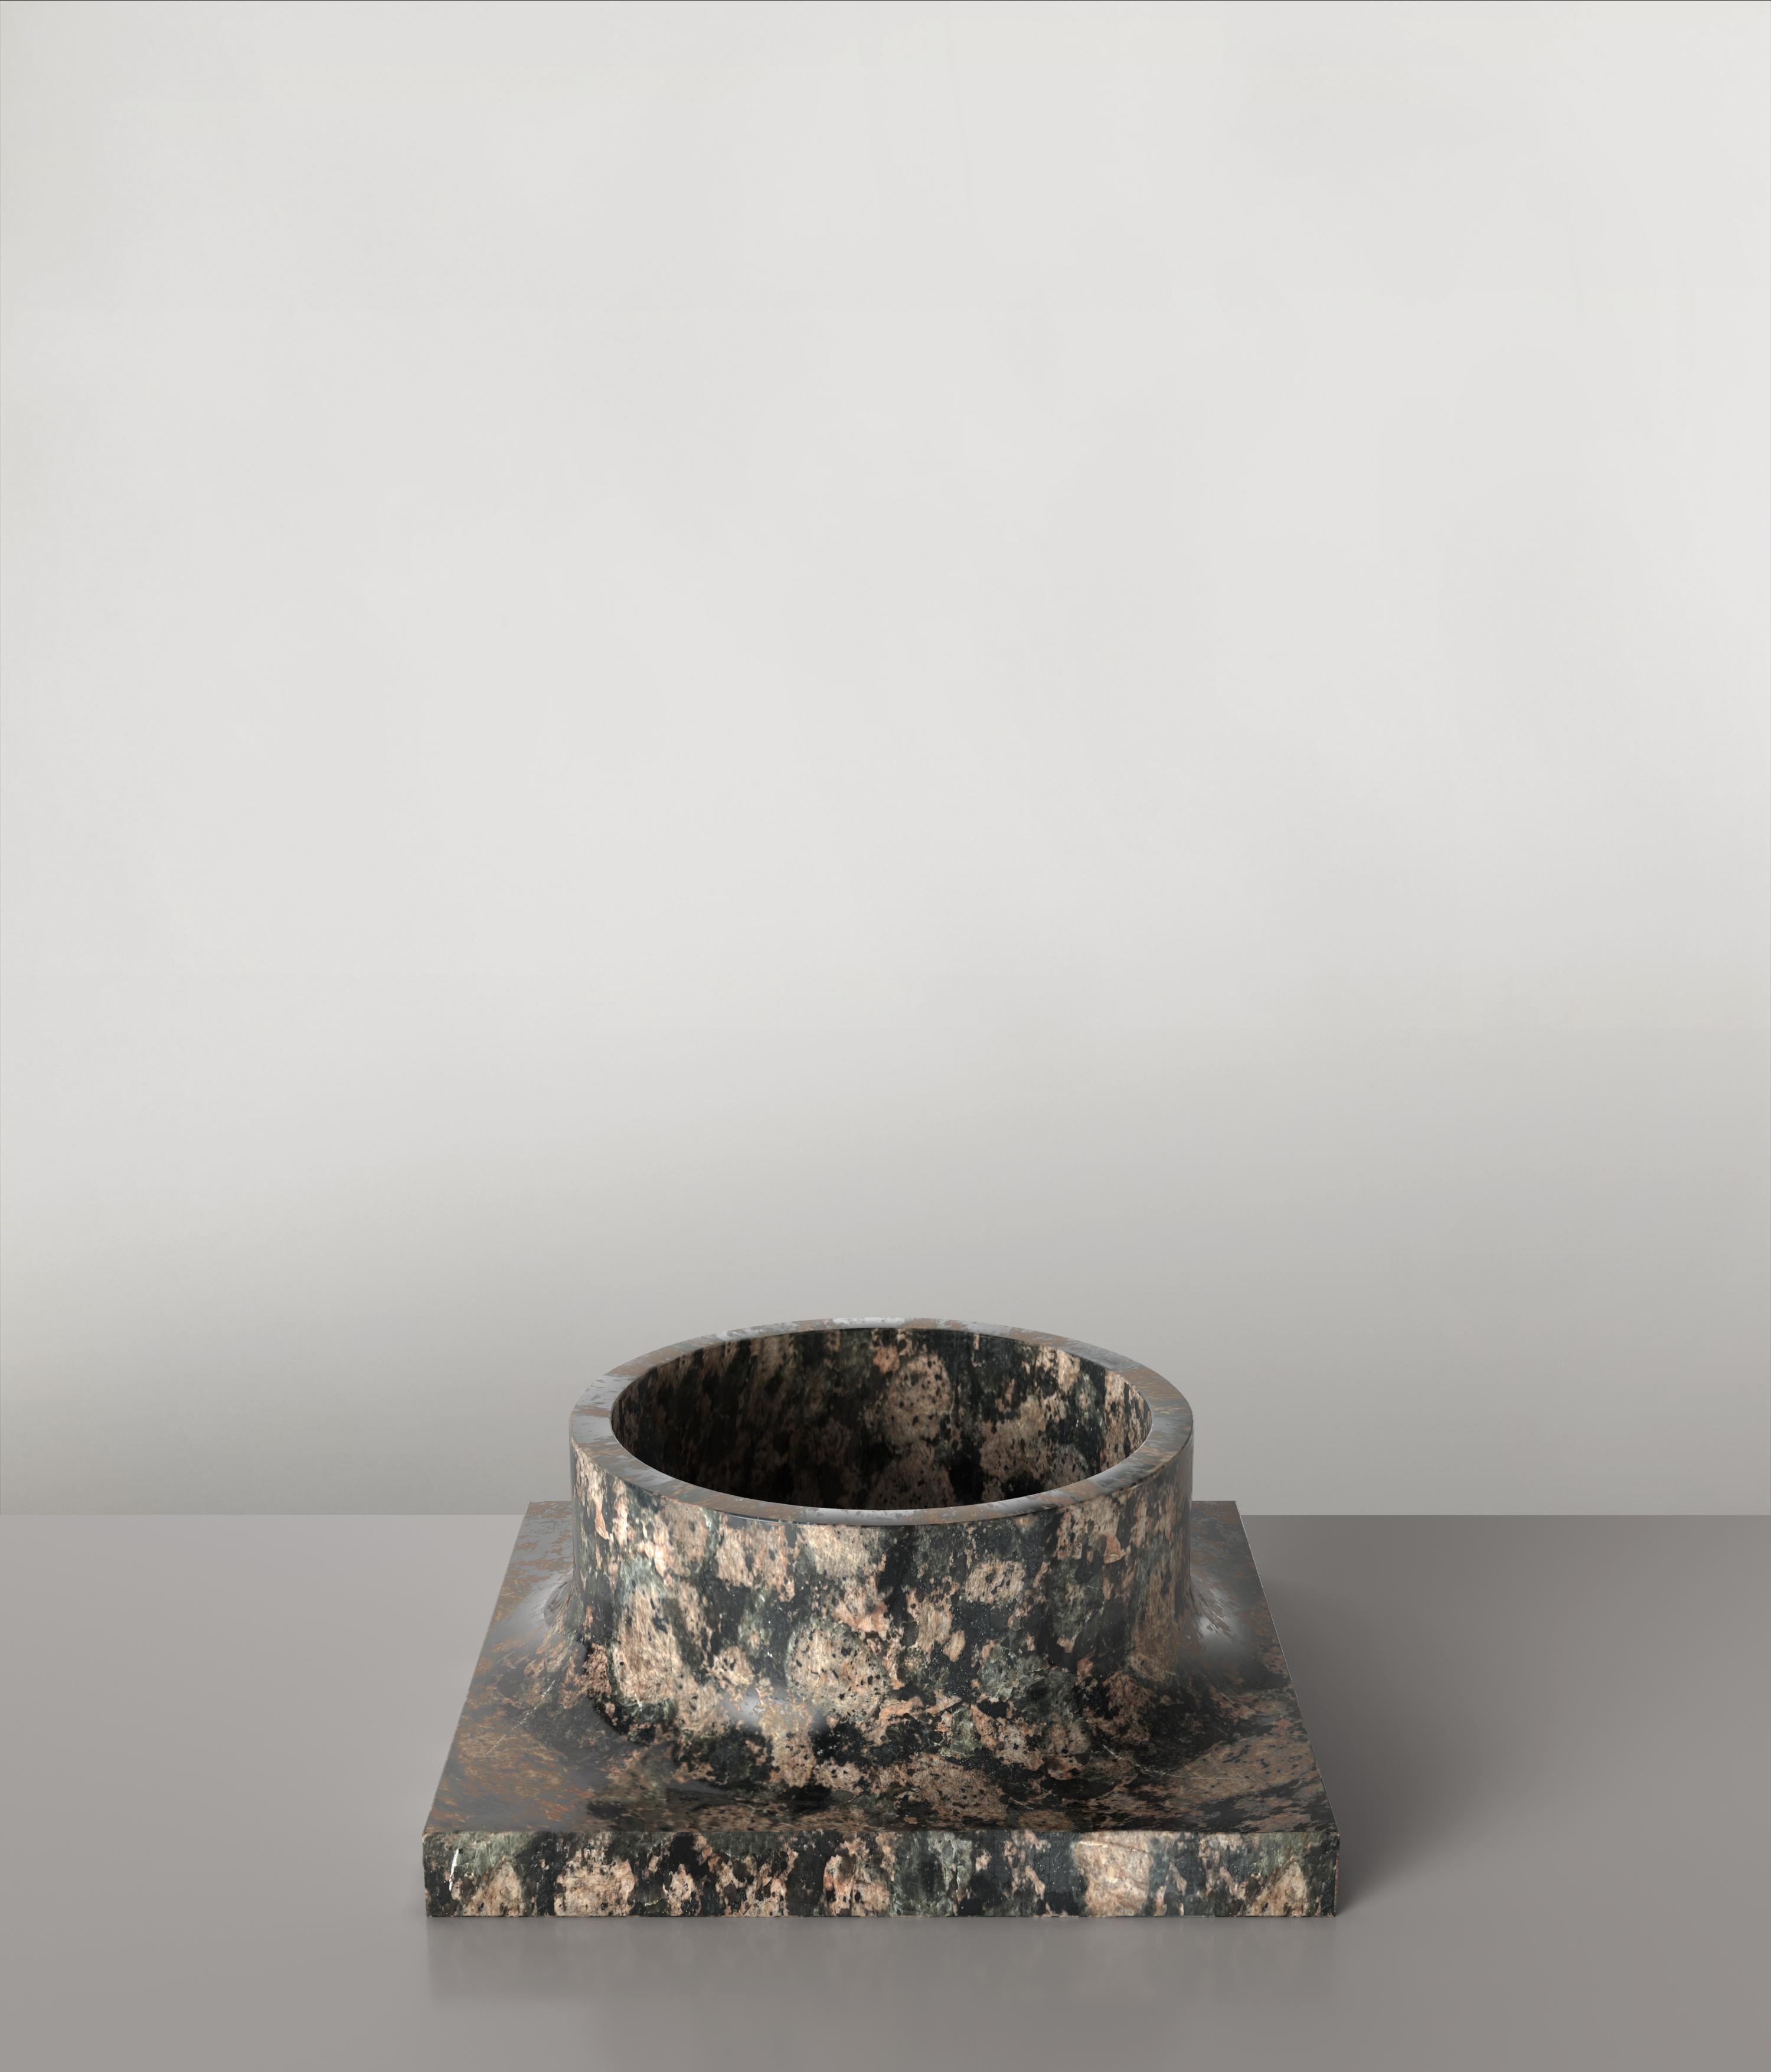 Palazzo V1 ist eine skulpturale Vase des 21. Jahrhunderts, die von italienischen Kunsthandwerkern aus Granitstein hergestellt wird. Er ist Teil der Designsprache Palazzo, die vom Kunstforschungsteam von Edizione Limitata in Mailand entwickelt wurde.